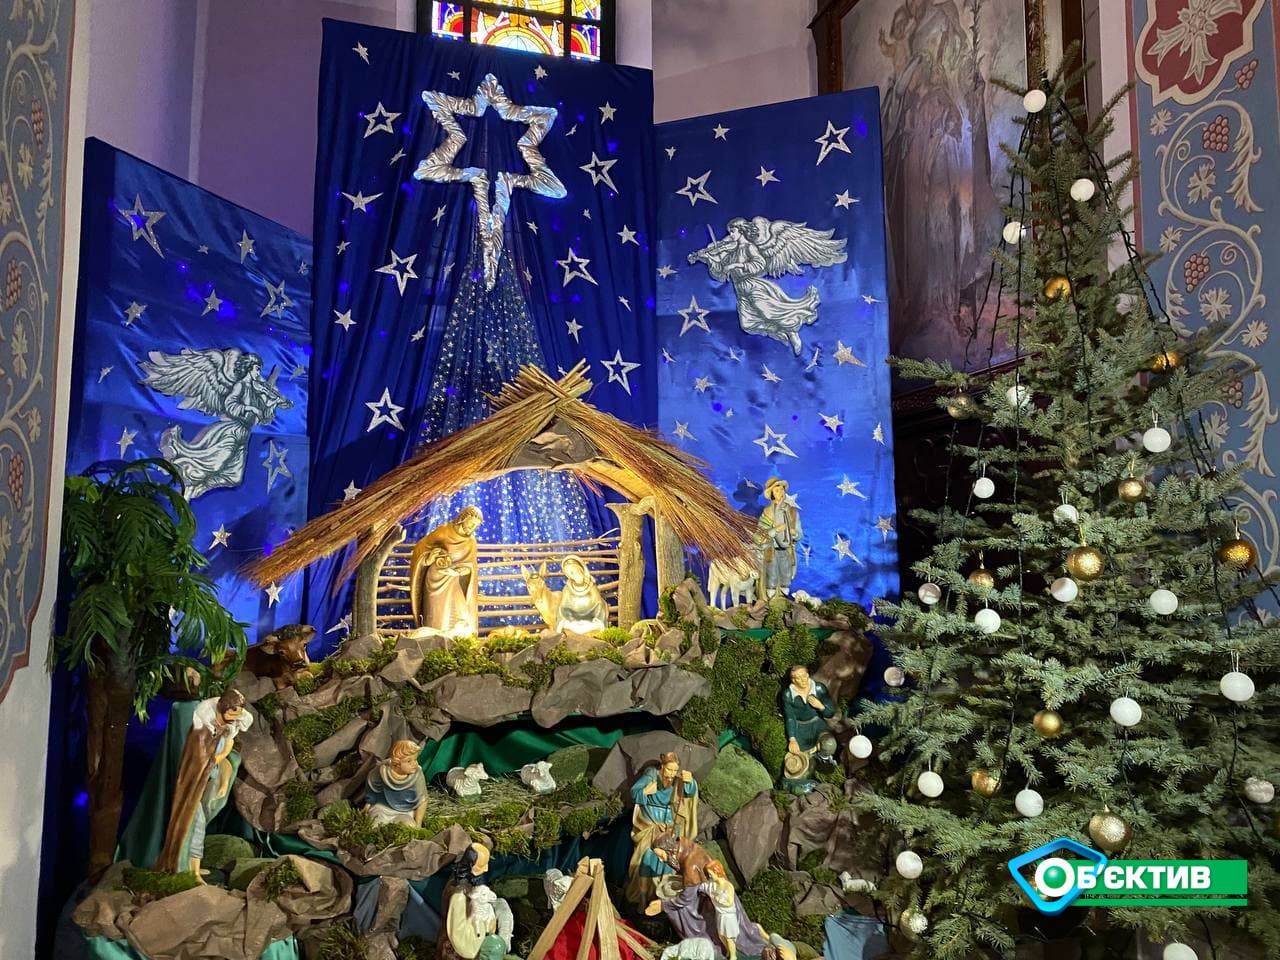 Мер міста на Харківщині запустив опитування, коли святкувати Різдво